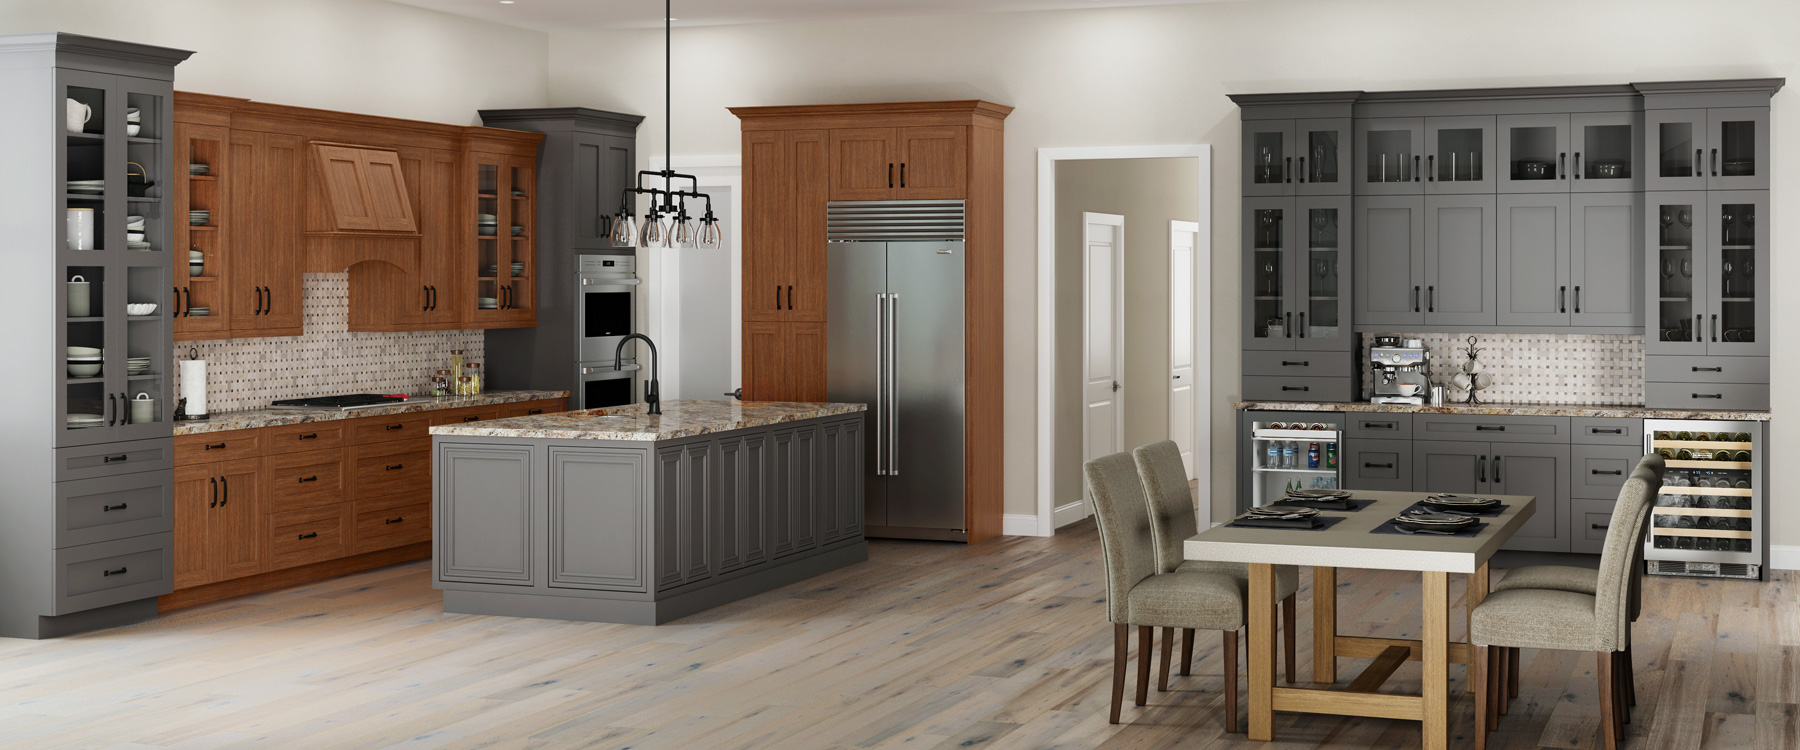 开厨房设计混合匹配灰树和天然谷木板公司